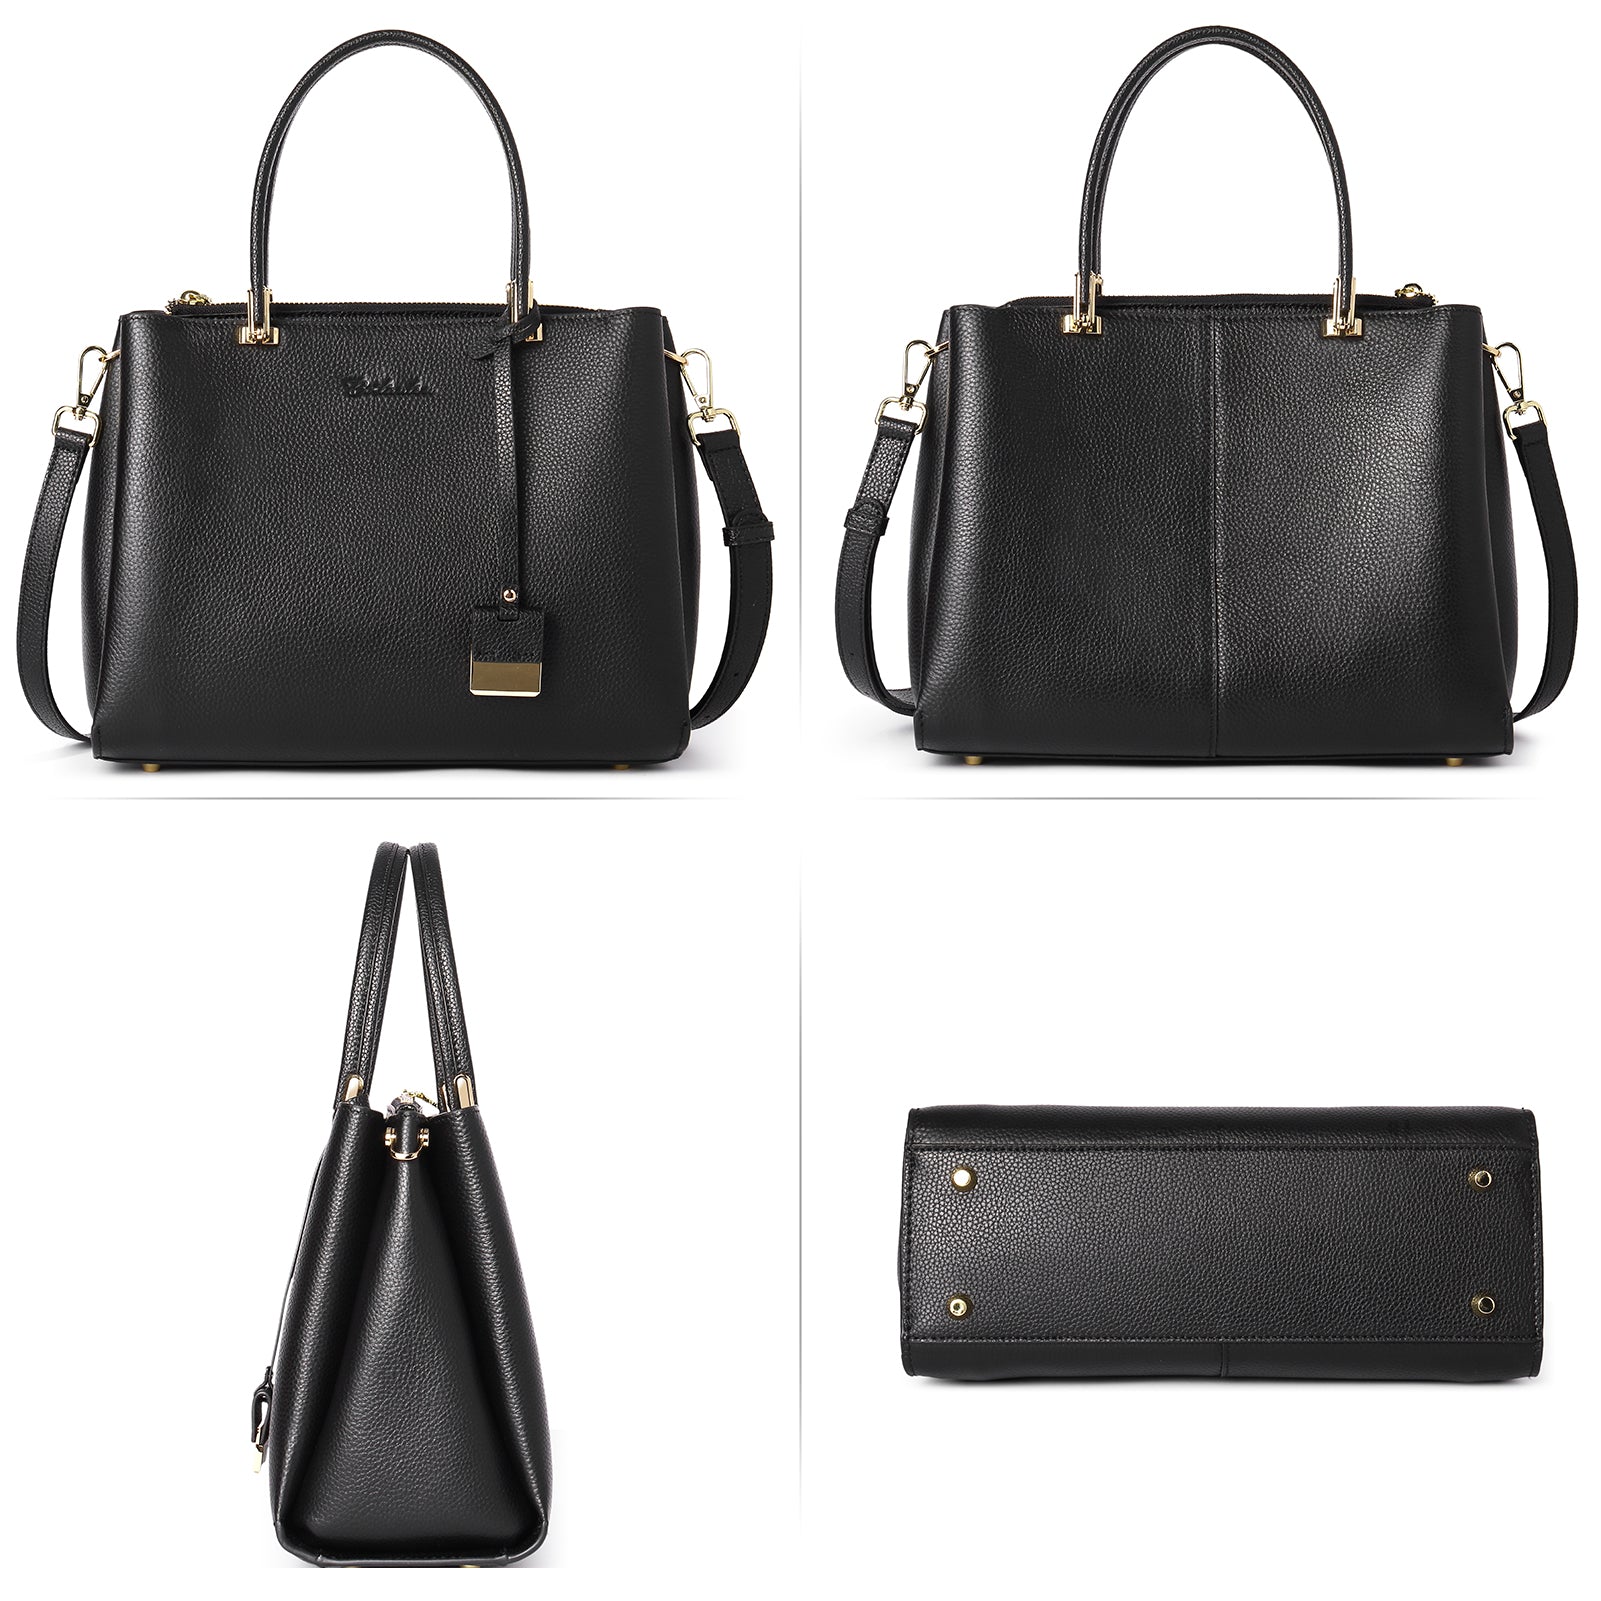 BOSTANTEN Handbags for Women Genuine Leather Designer Satchel Purses T ...